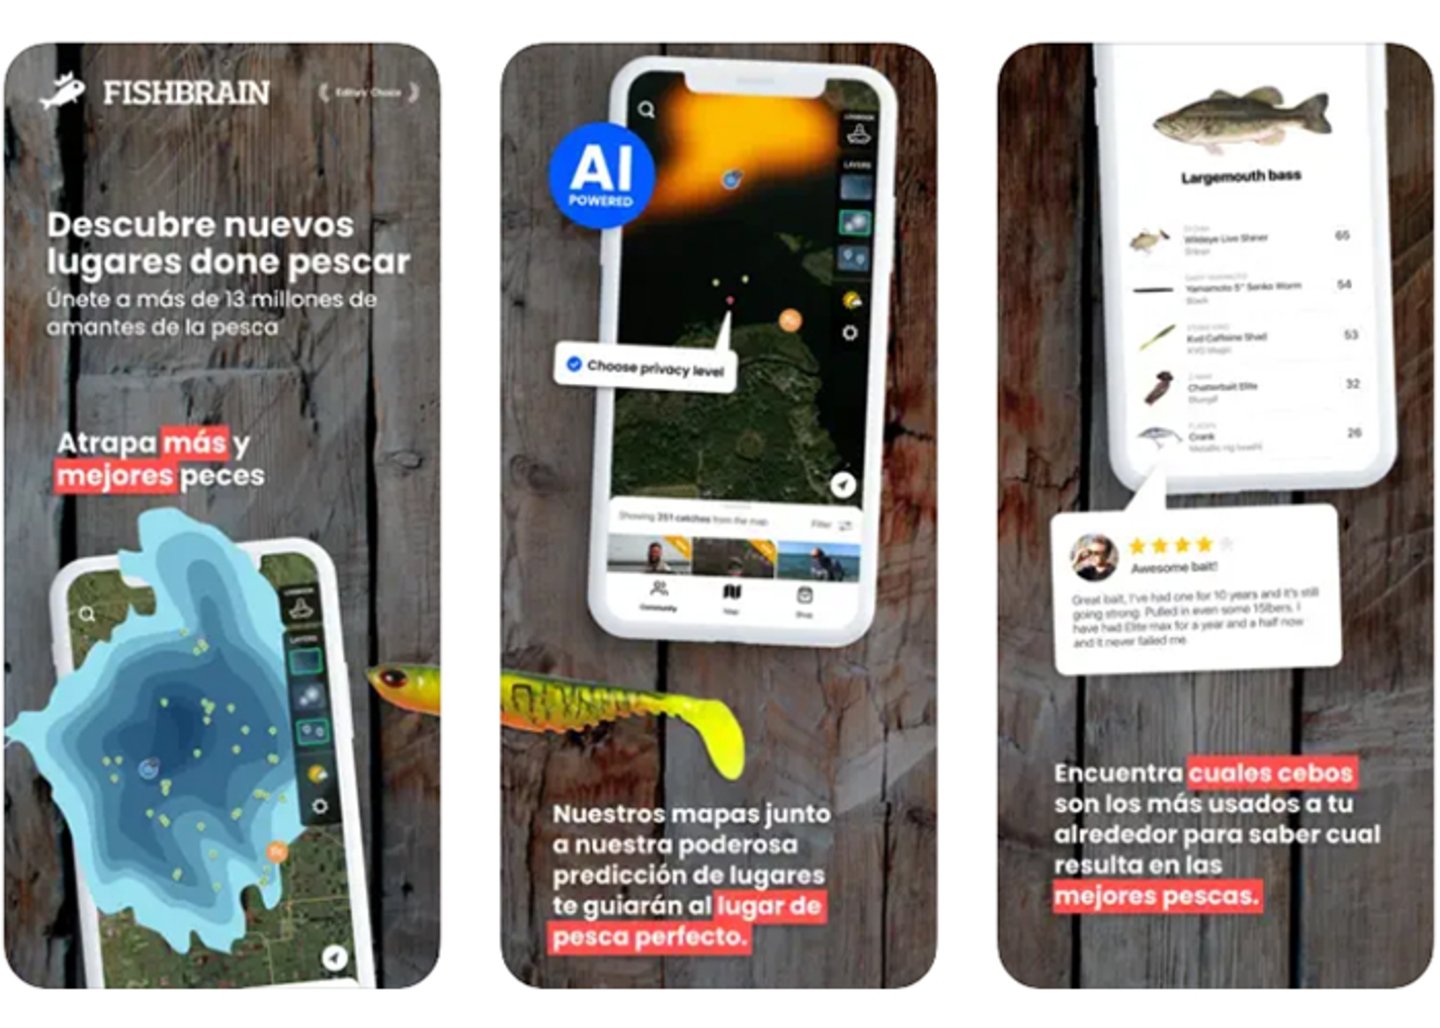 Sumergete en la emocion: La app Fishbrain te lleva a una aventura acuatica sin igual